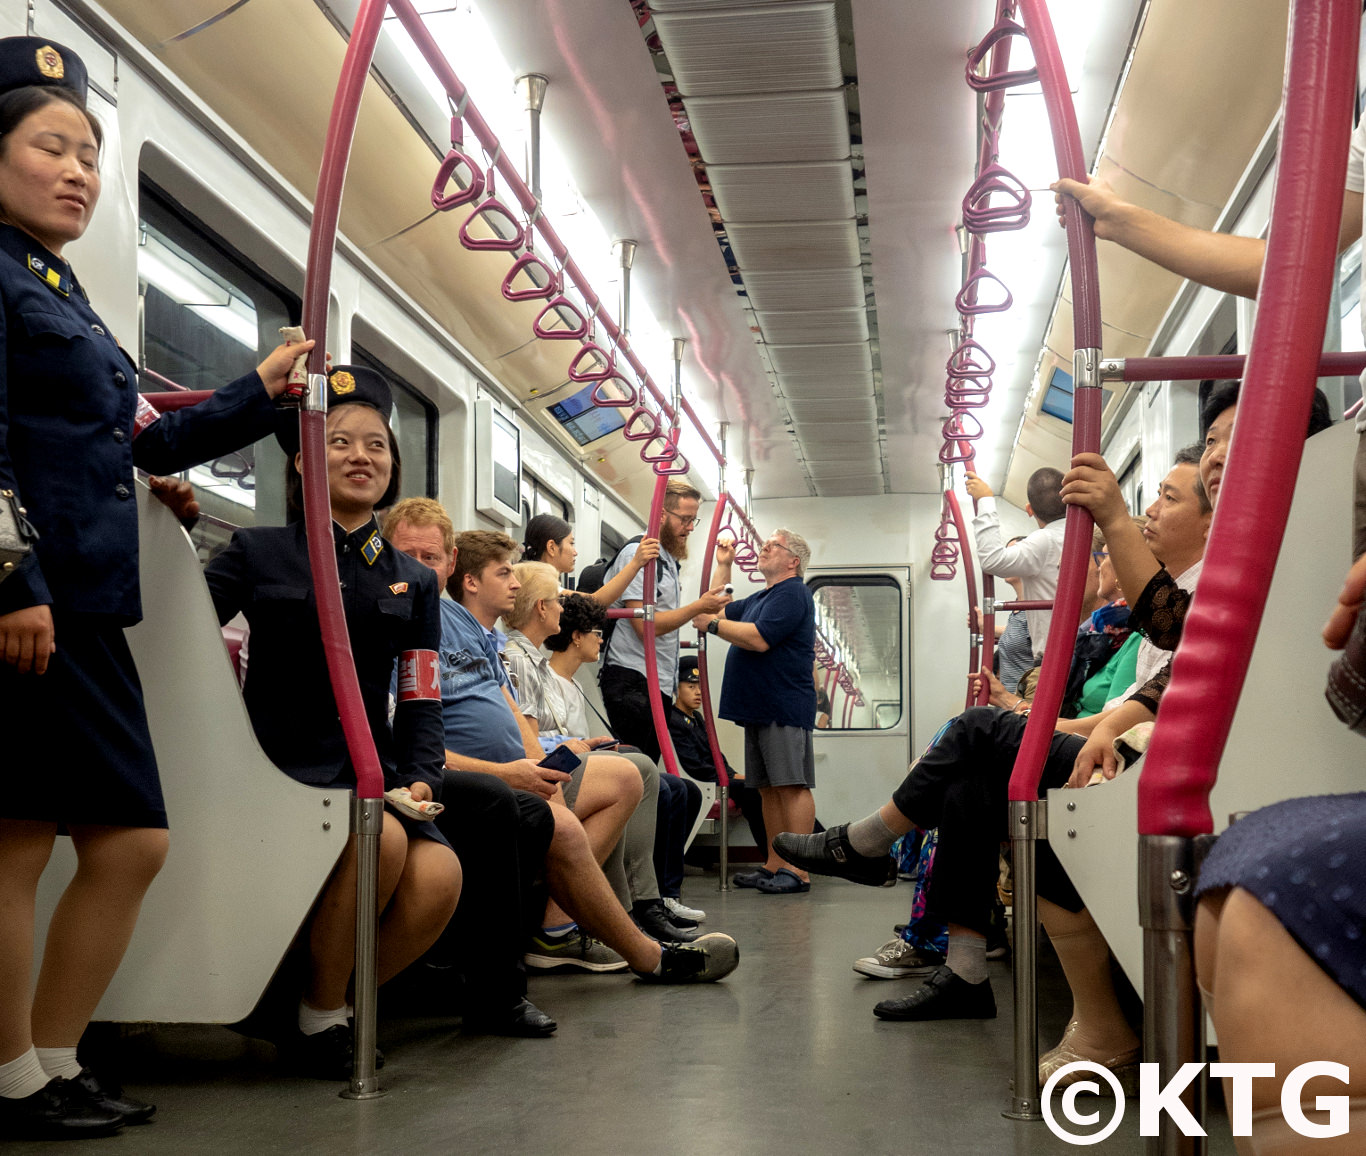 Travailleurs du métro prenant le train dans le métro de Pyongyang. Ce train est le nouveau fabriqué en Corée. Voyage en Corée du Nord organisé par KTG Tours